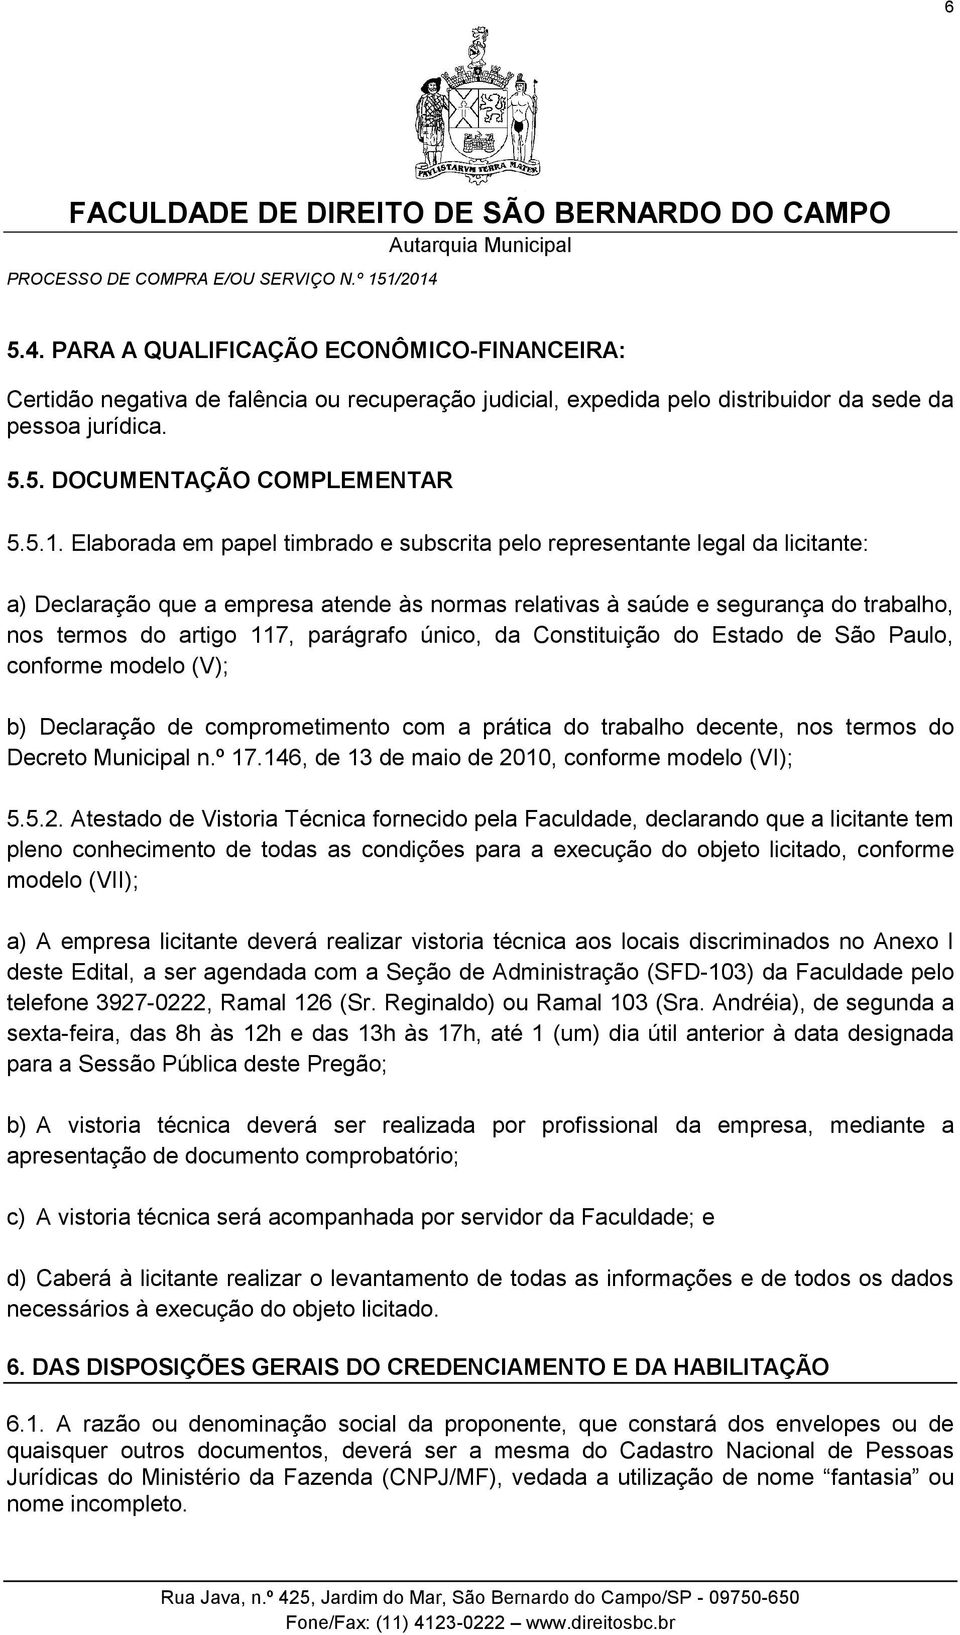 parágrafo único, da Constituição do Estado de São Paulo, conforme modelo (V); b) Declaração de comprometimento com a prática do trabalho decente, nos termos do Decreto Municipal n.º 17.